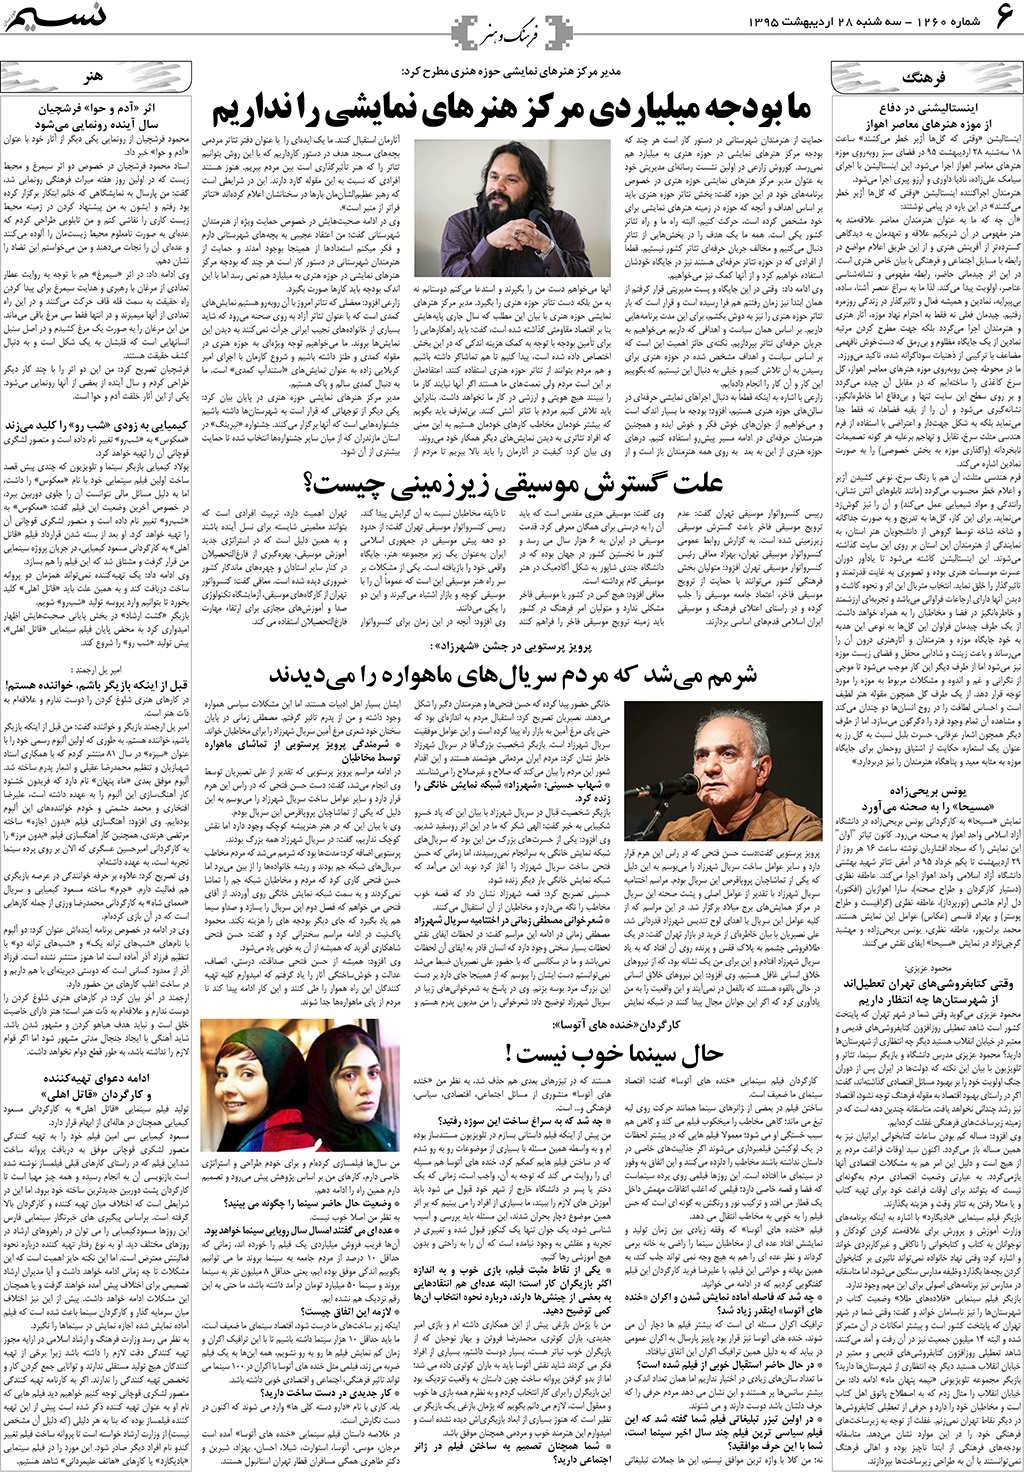 صفحه فرهنگ و هنر روزنامه نسیم شماره 1260